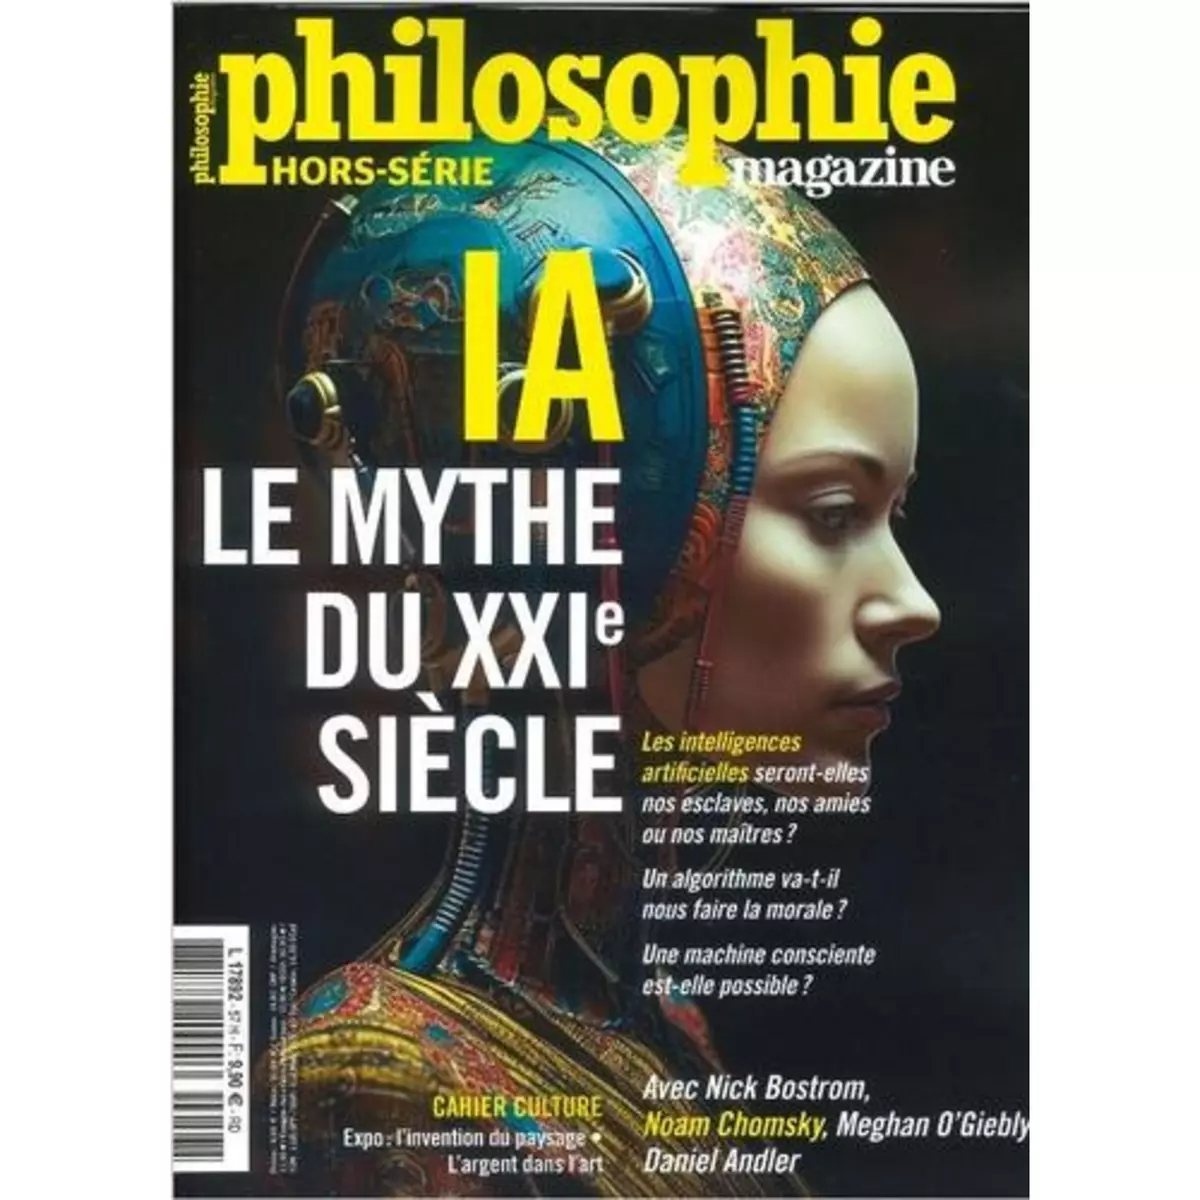  PHILOSOPHIE MAGAZINE HORS-SERIE N° 57, MAI 2023 : IA, LE MYTHE DU XXIE SIECLE, Philosophie Magazine